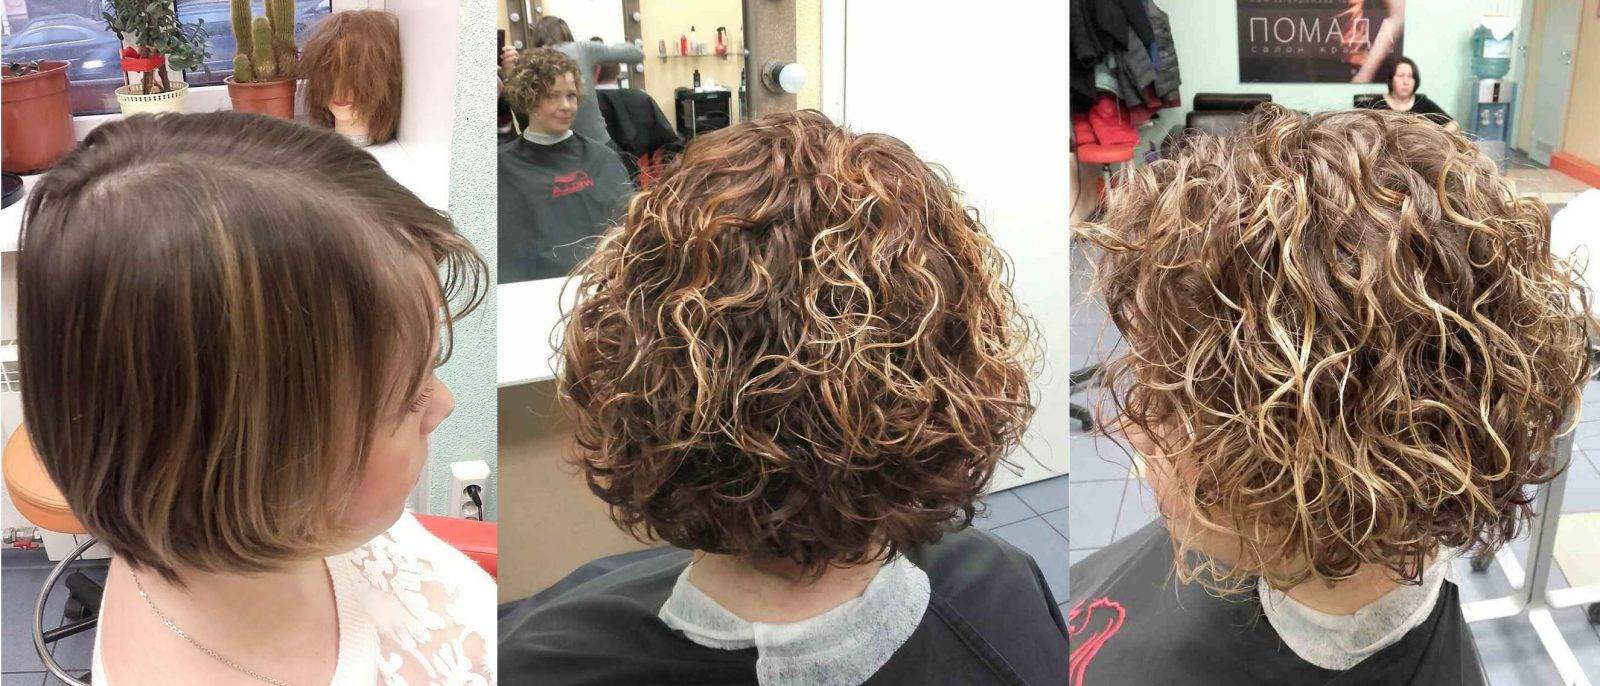 Биозавивка волос на средние волосы, ее описание и виды, фото до и после процедуры